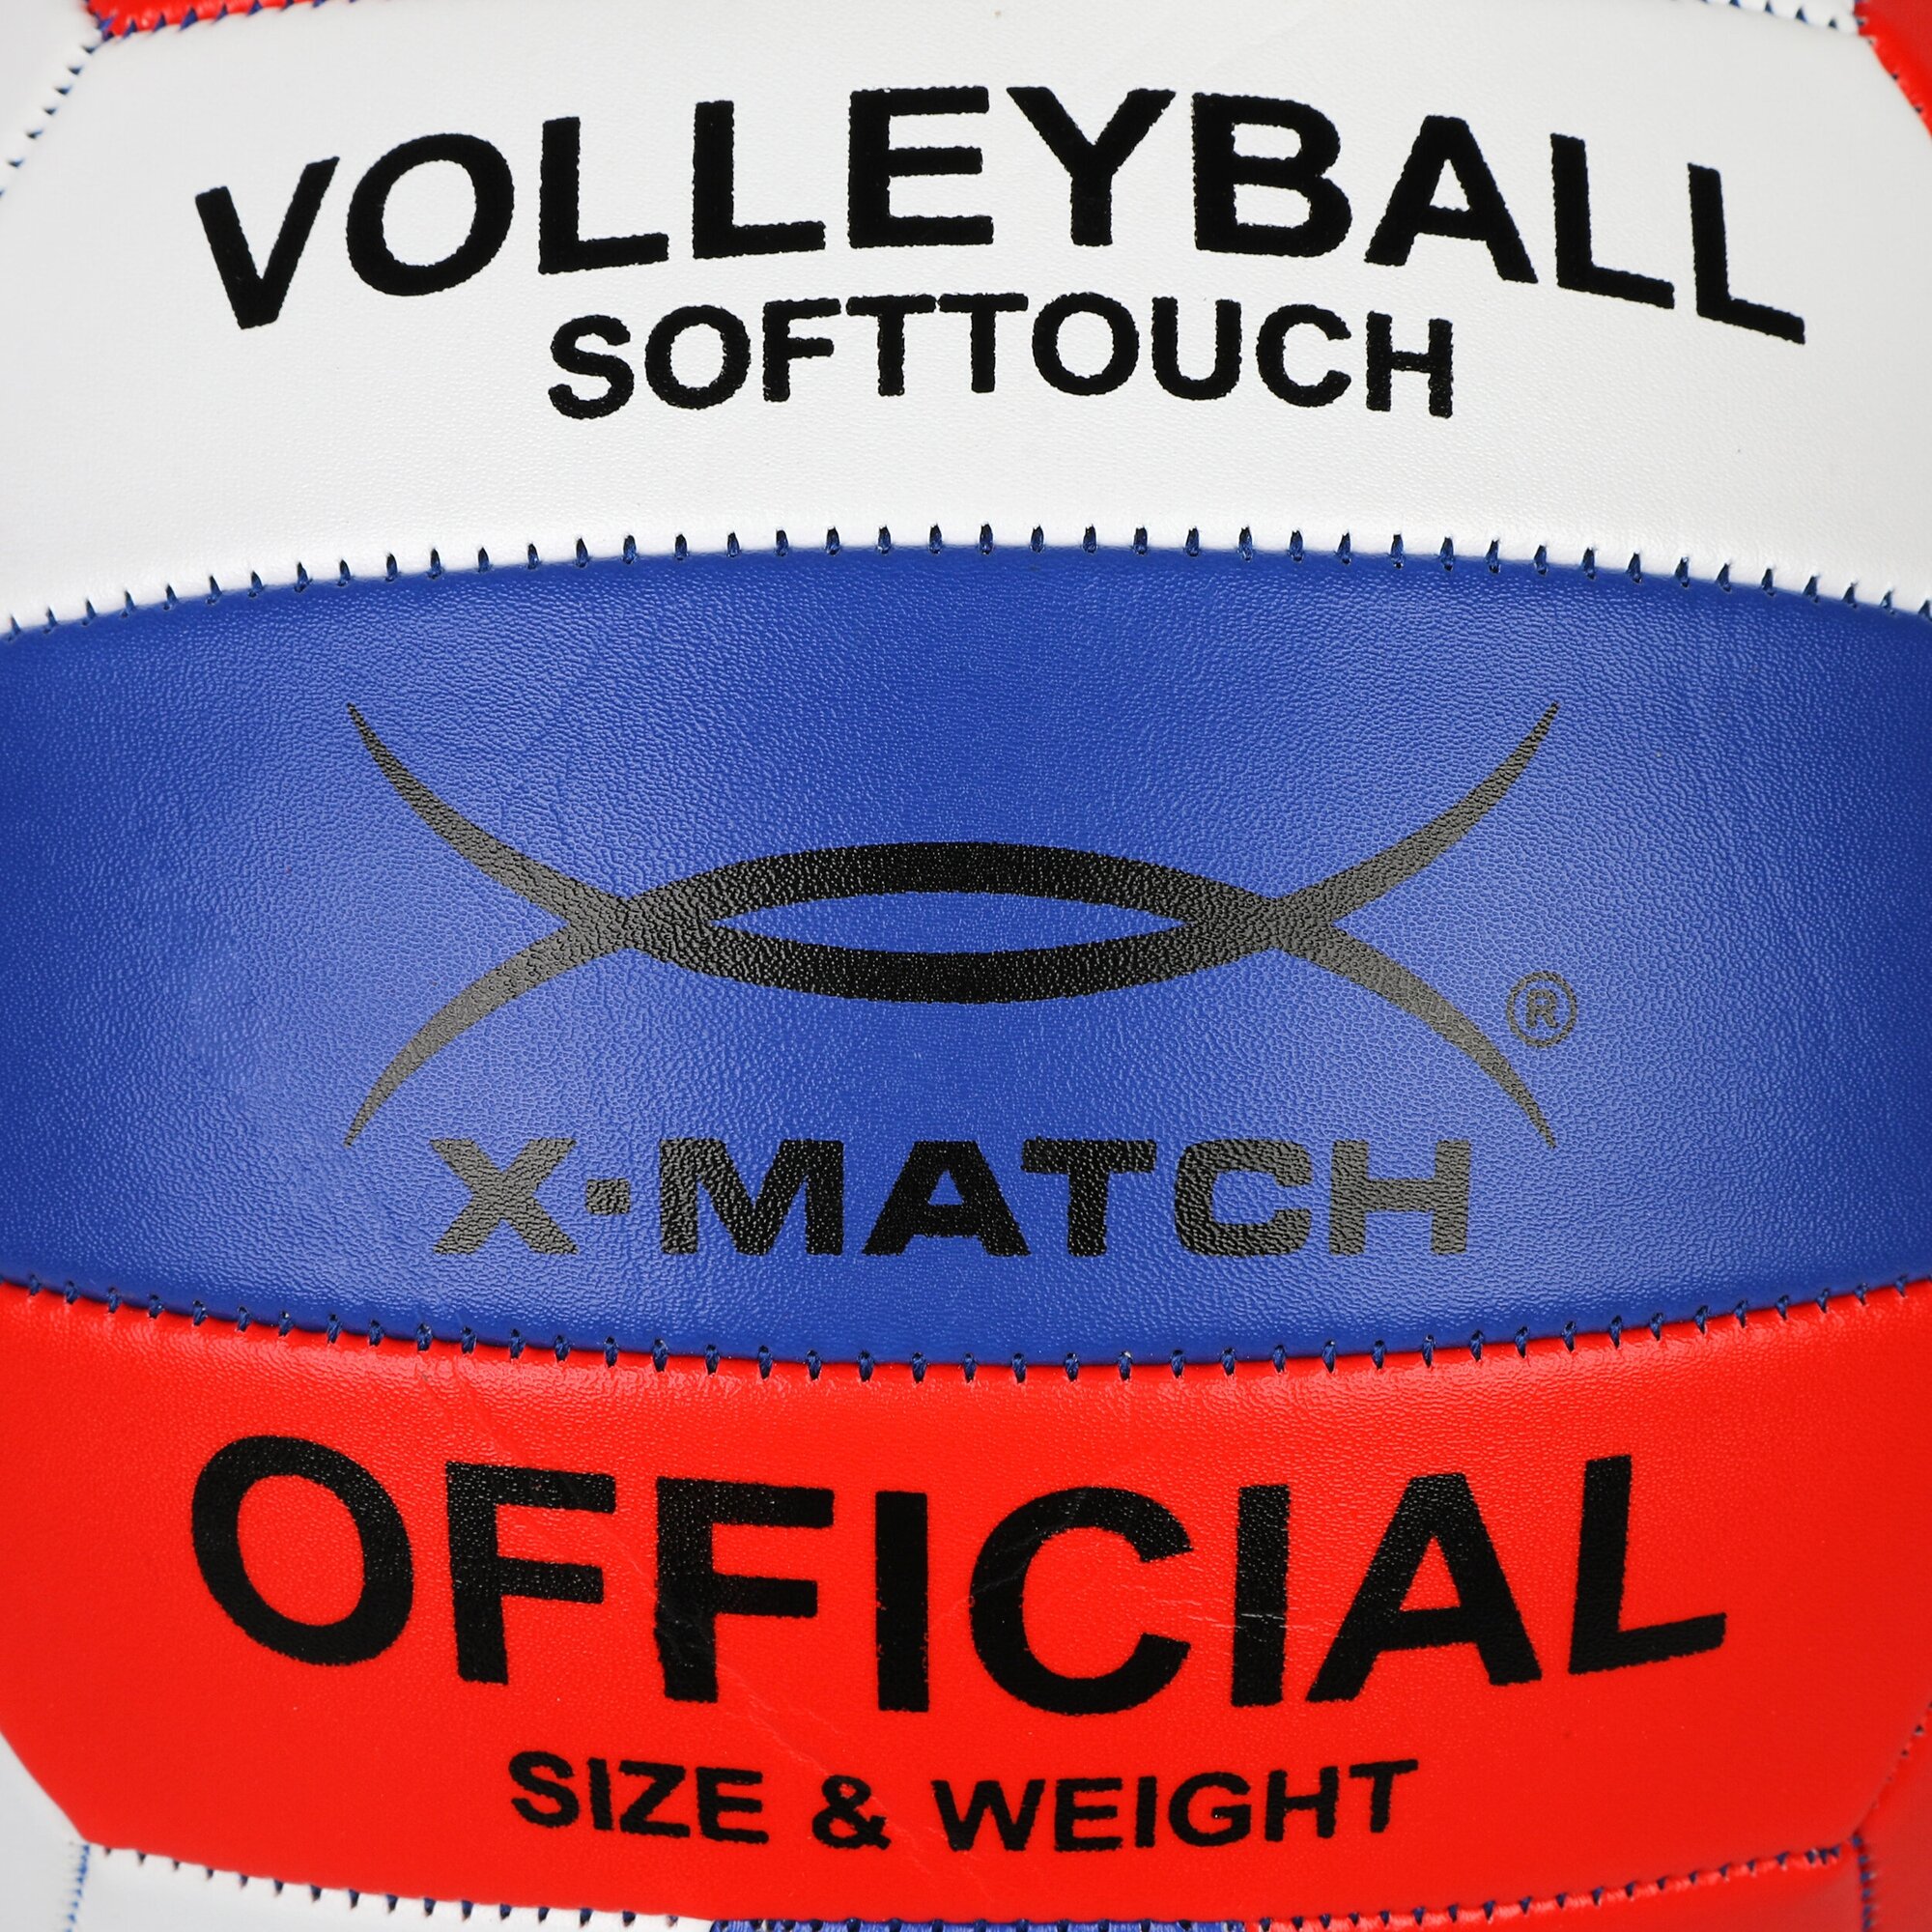 Волейбольный мяч X-Match 1,6 PVC 56457 красный